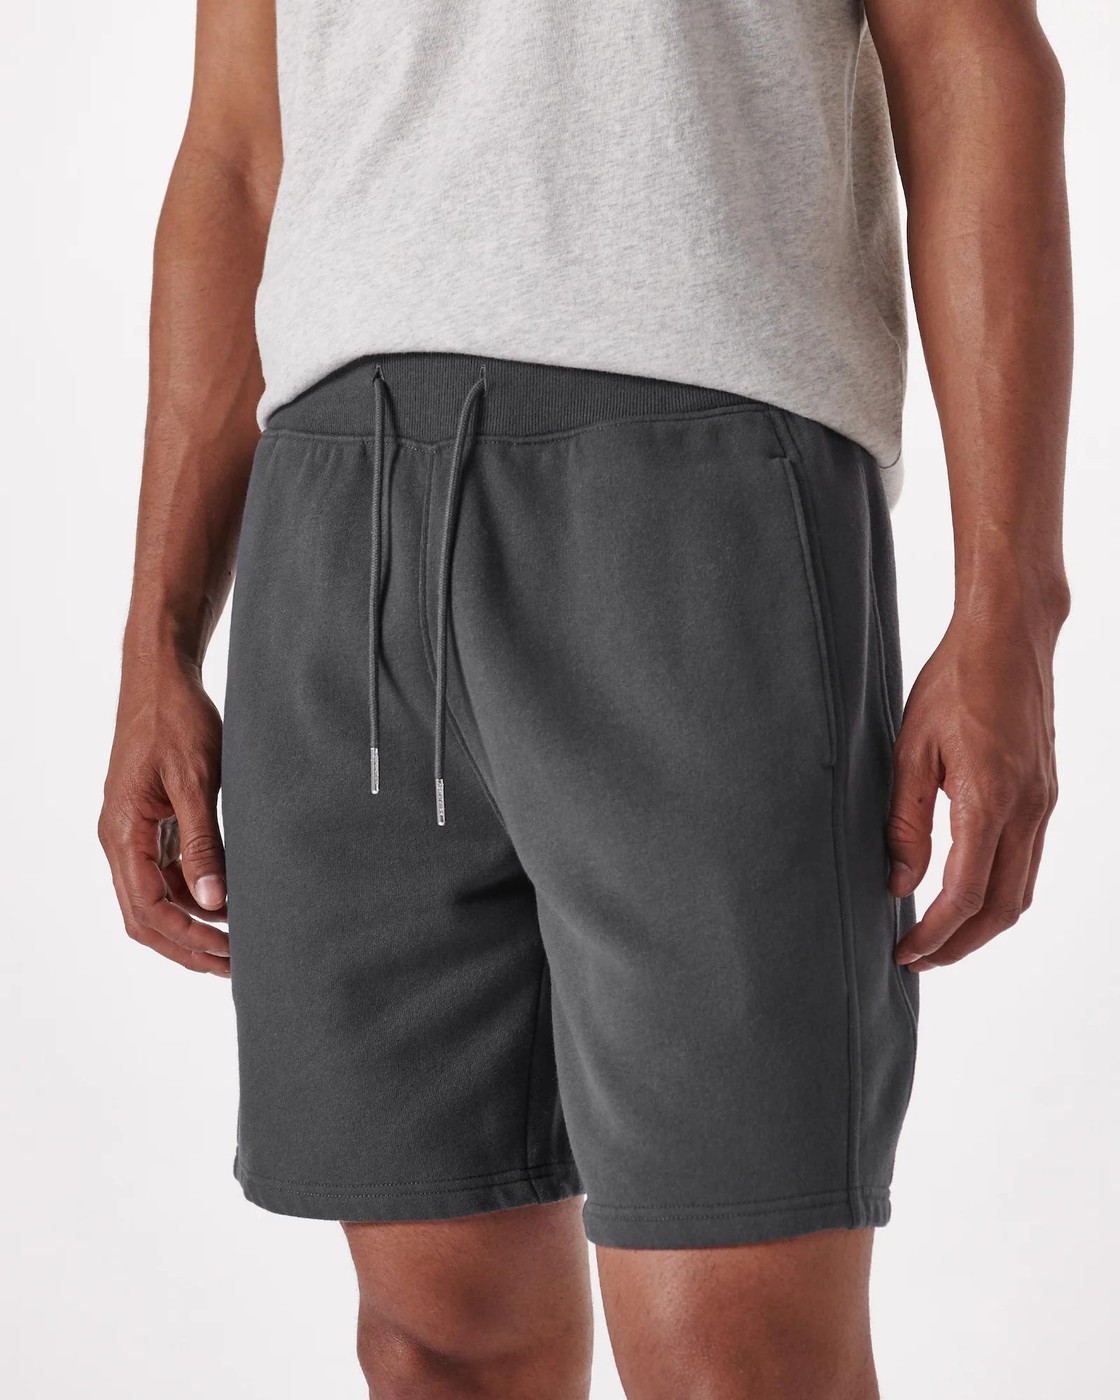 Спортивные шорты мужские - шорты для спорта Abercrombie & Fitch, M, M